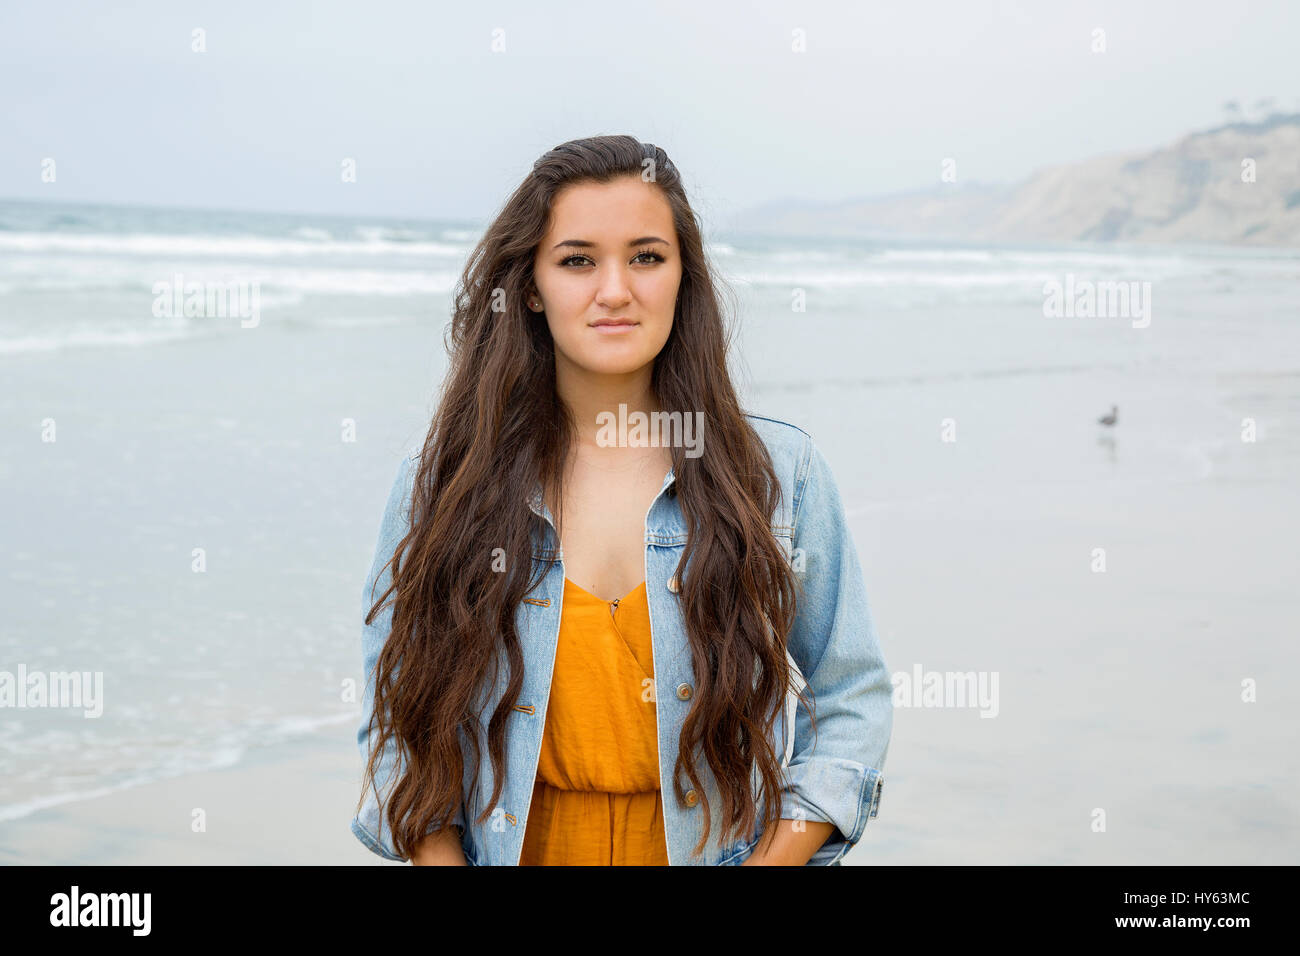 Adolescente à la plage, La Jolla, Californie Banque D'Images